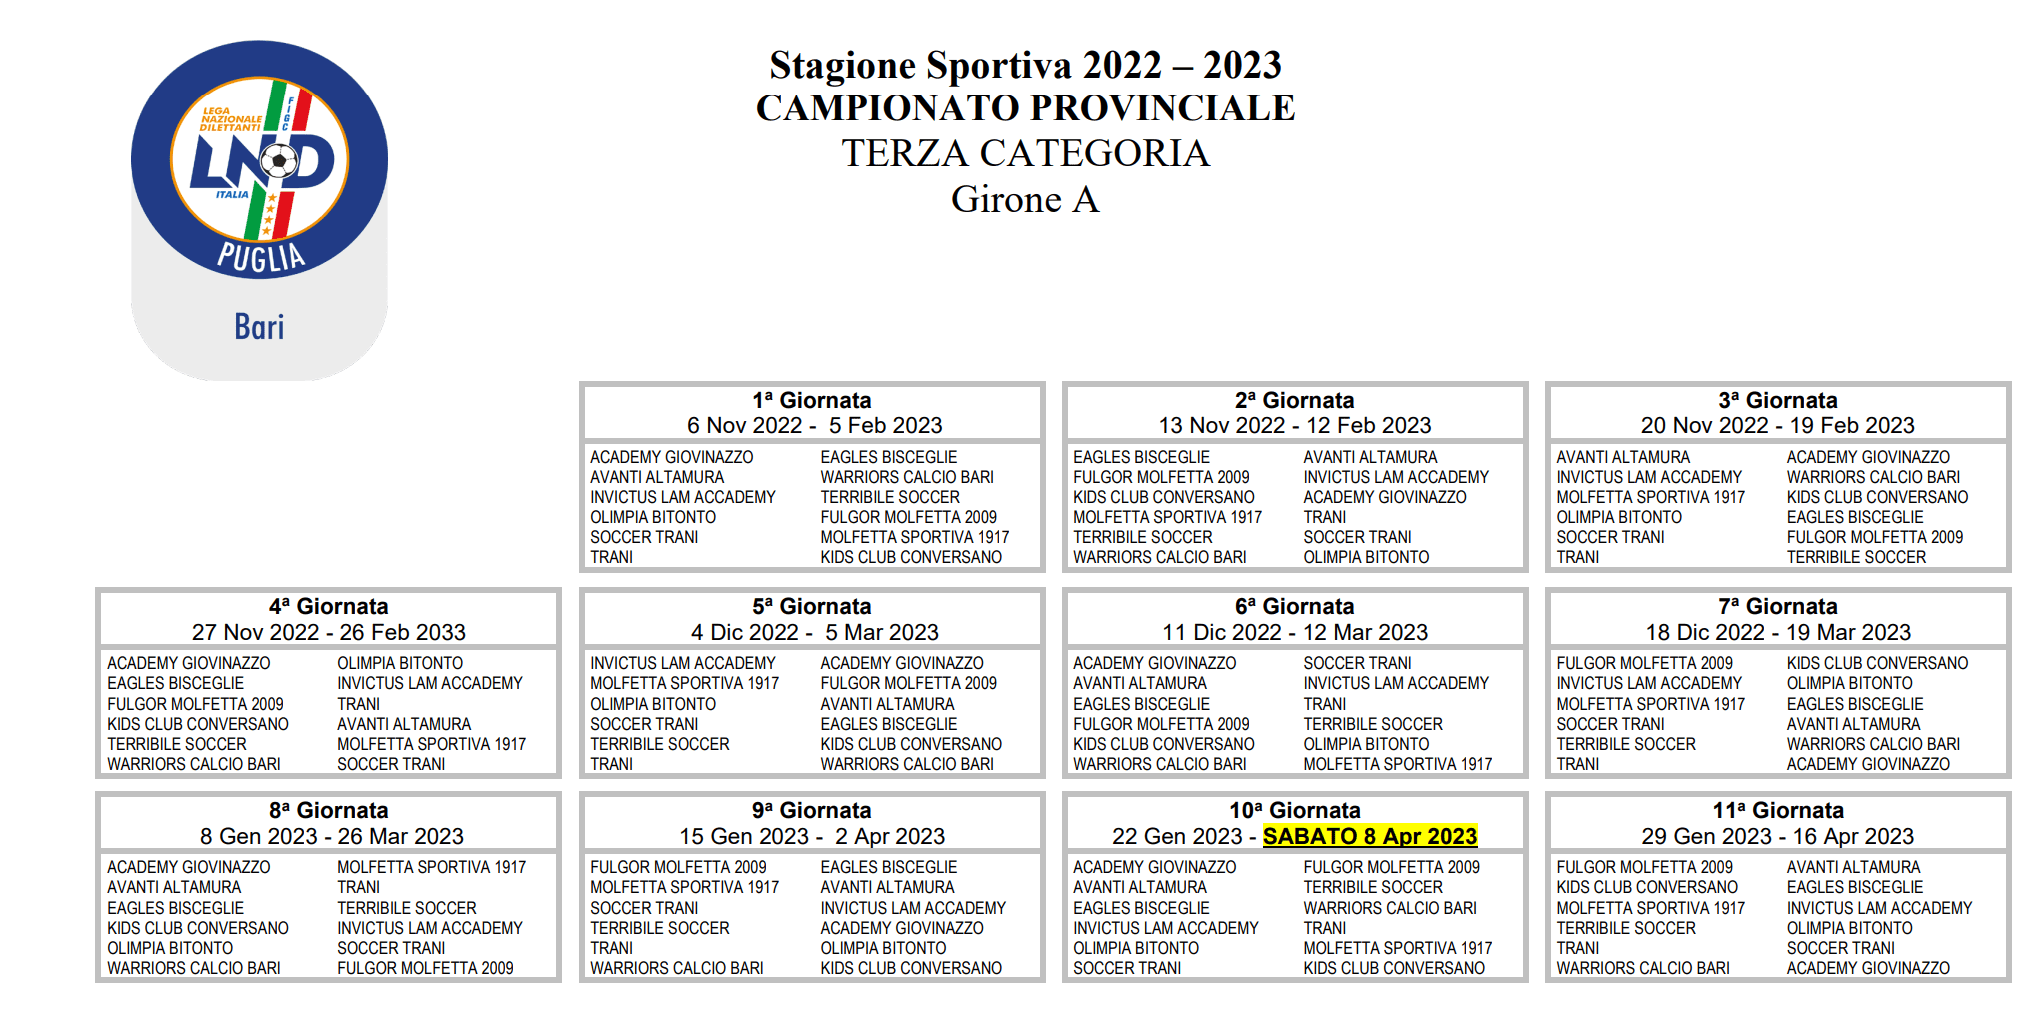 Calendario Terza Categoria Bari 2022-23